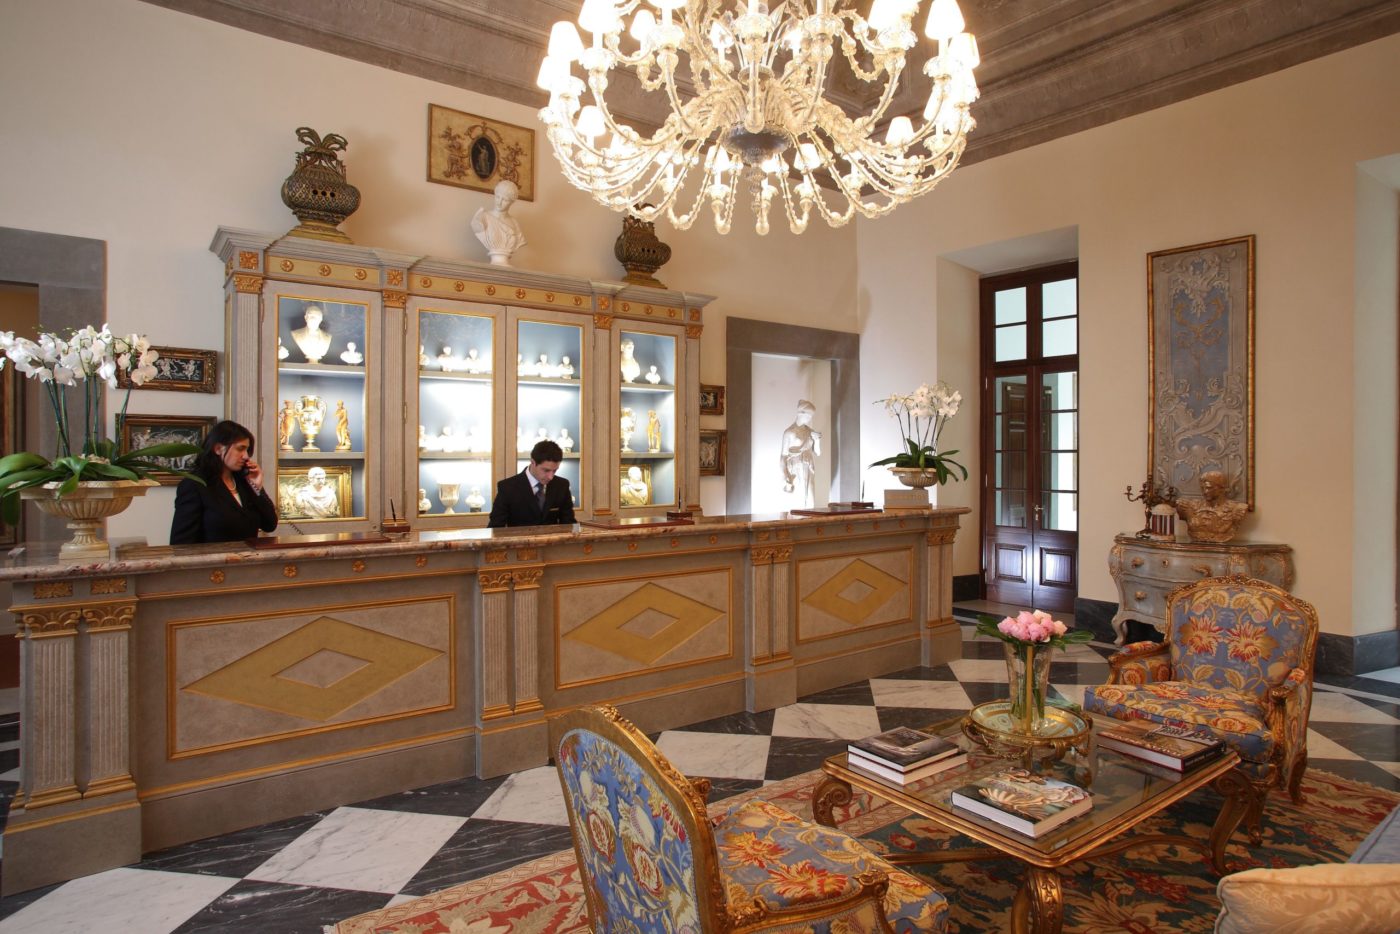 Il lusso è tra le aree coinvolte nei top trend per l'hotellerie. Nella foto, la reception del Four Seasons di Firenze, 5 stelle lusso